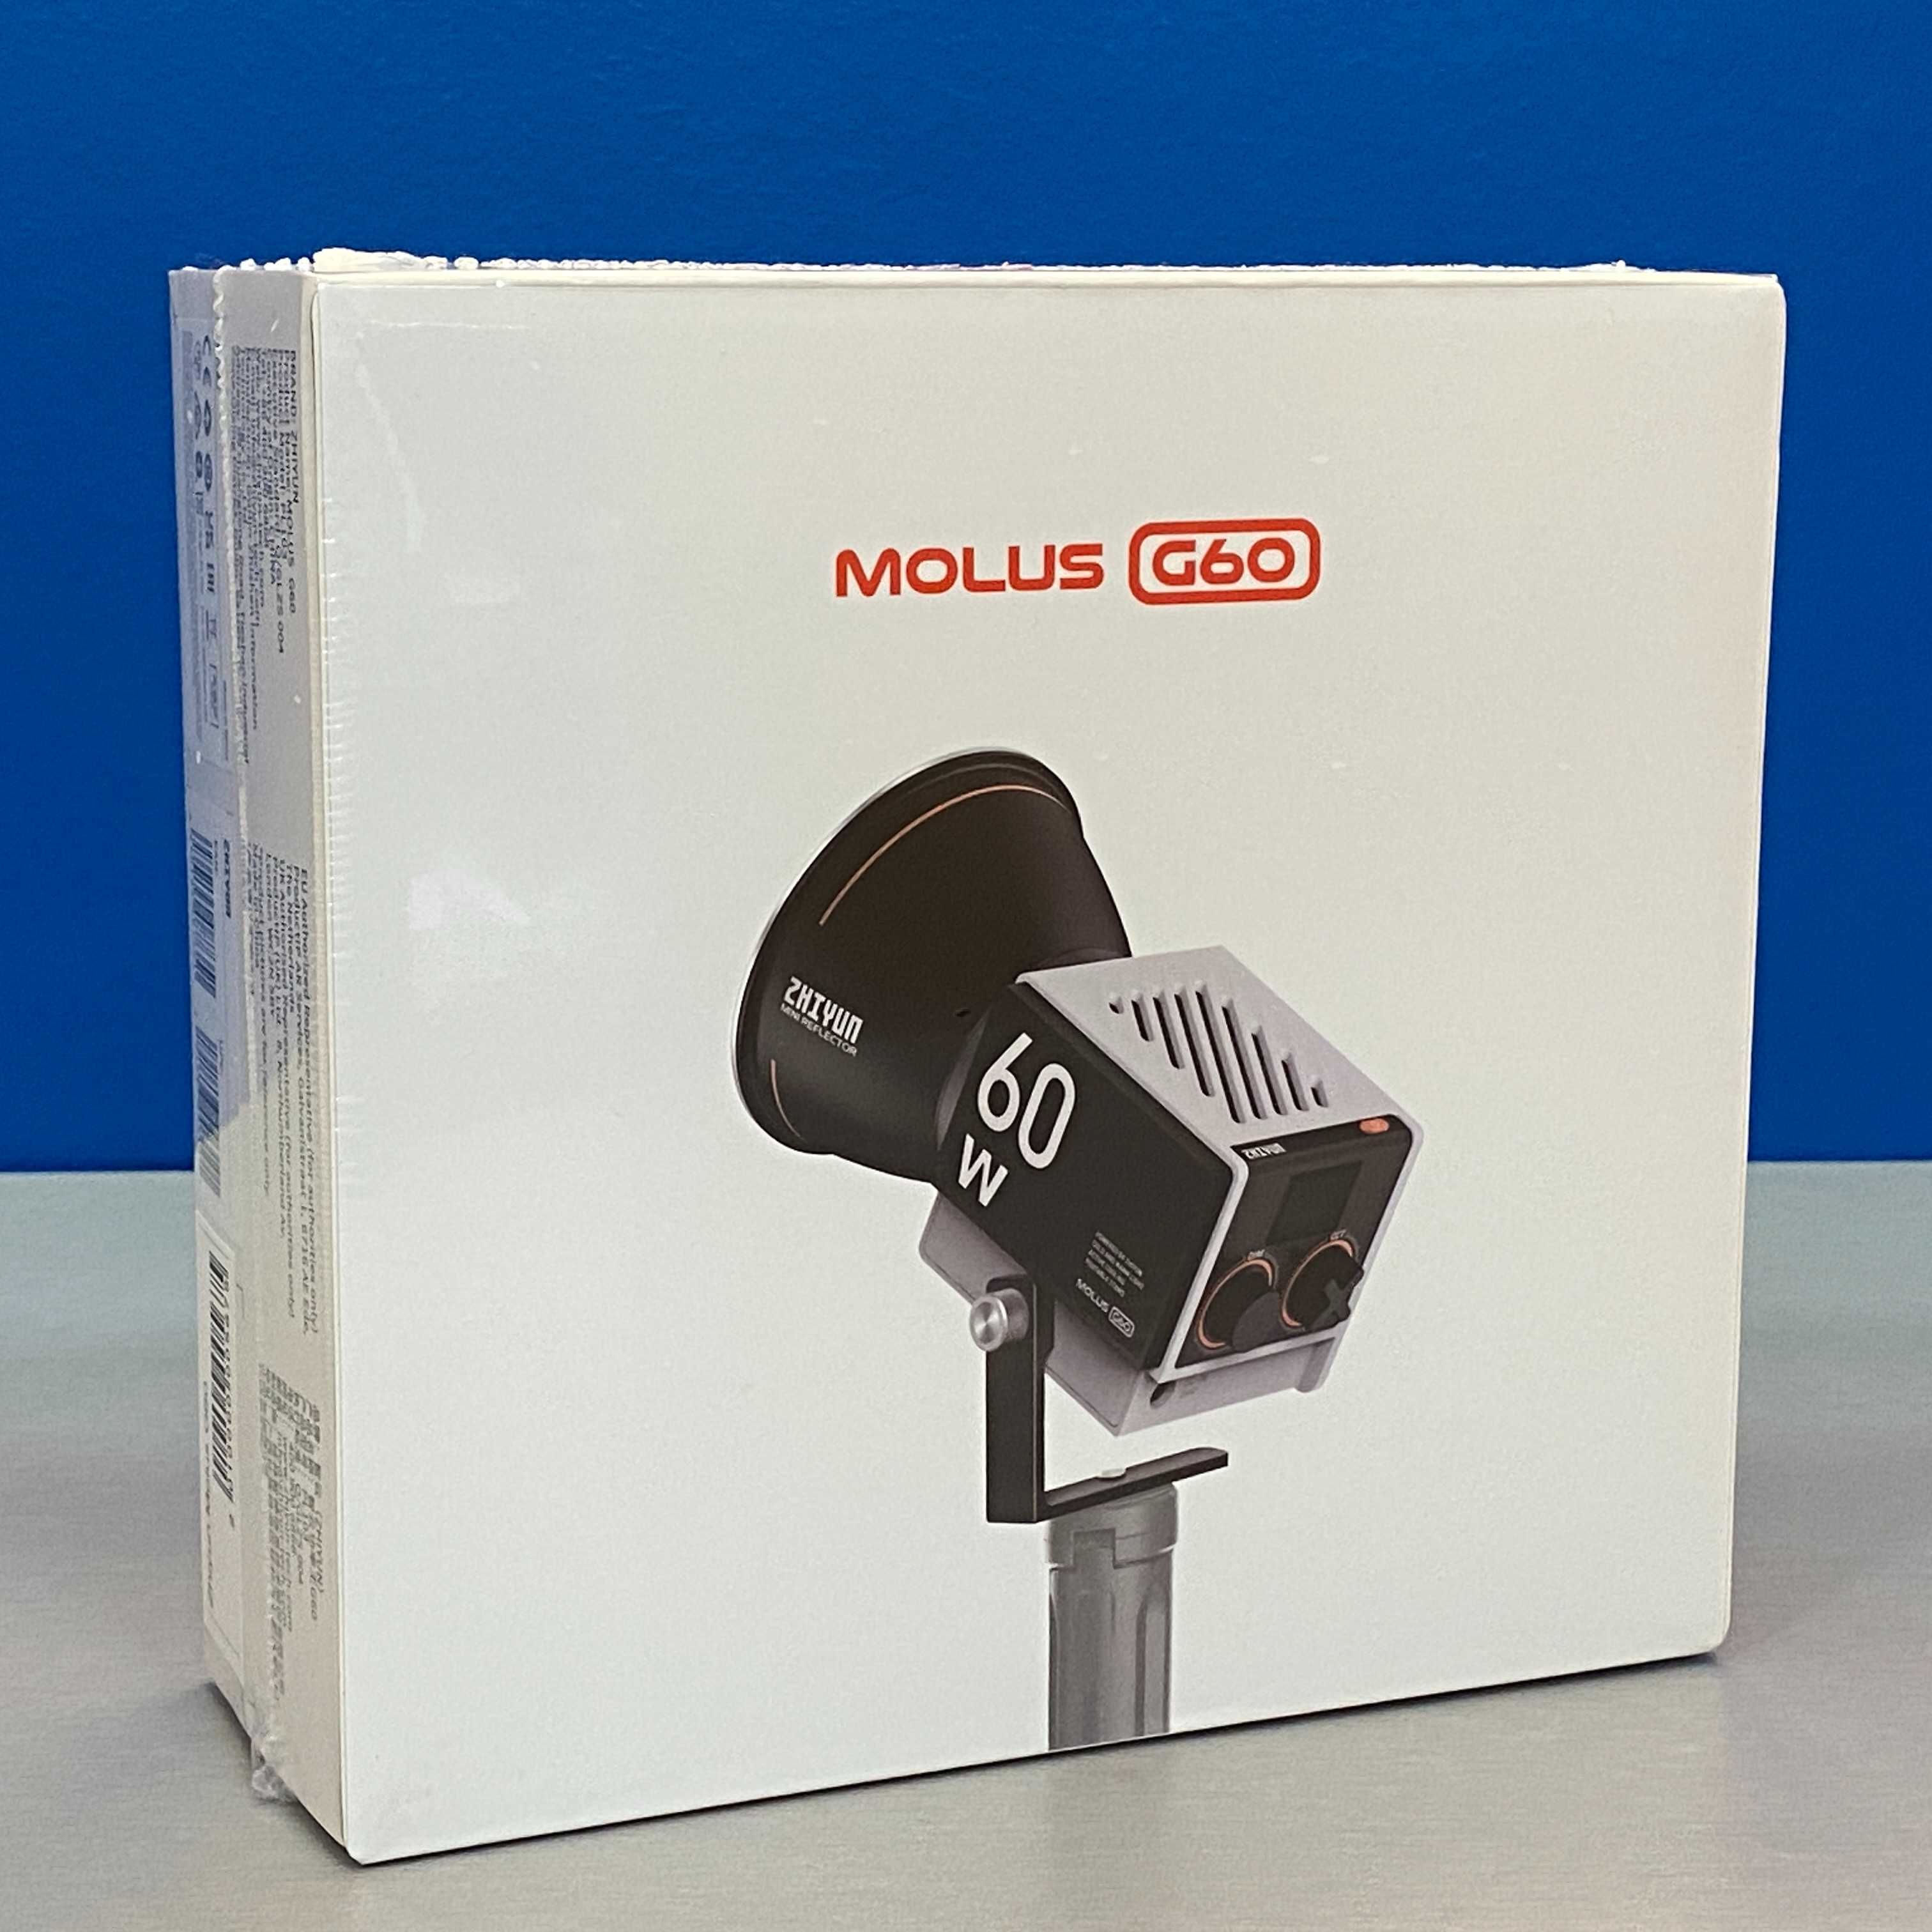 Zhiyun Molus G60 (Pocket COB Light) - SELADO - 3 ANOS DE GARANTIA